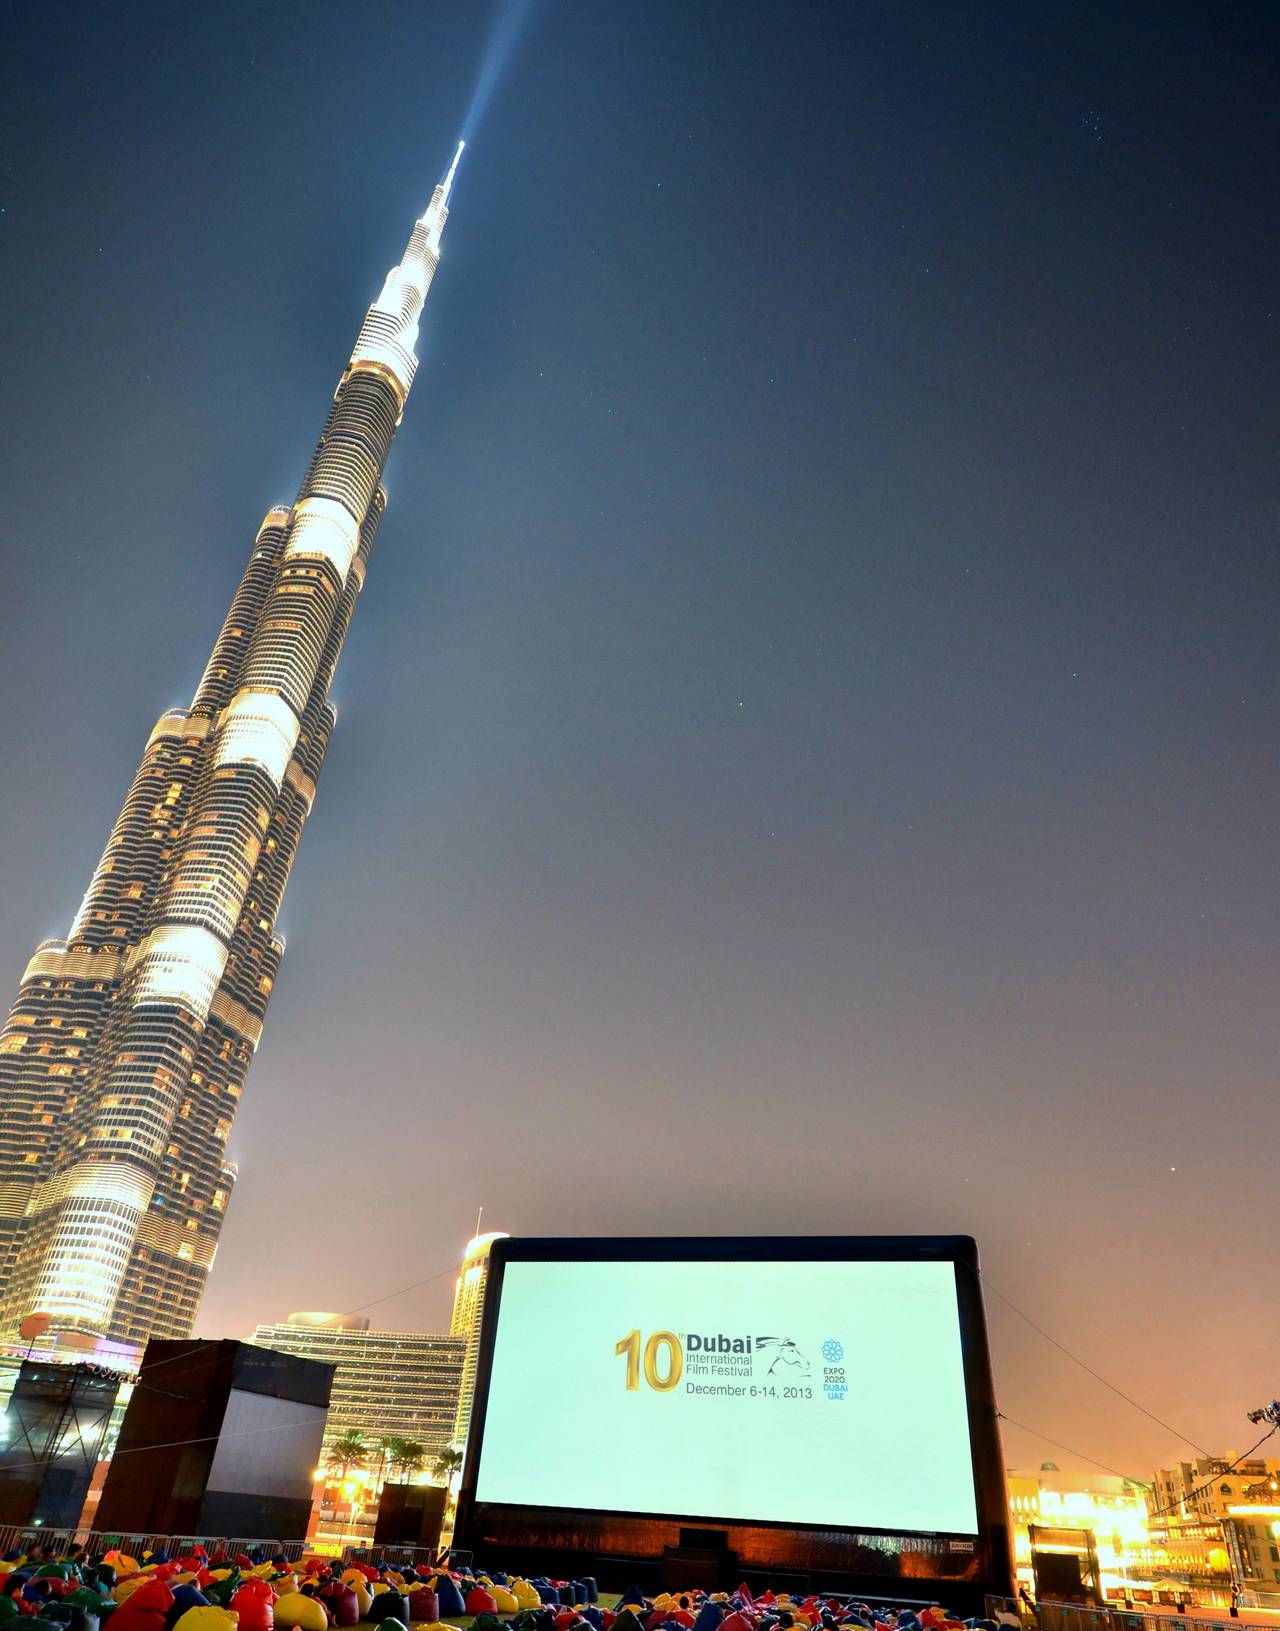 En caso de que necesite alquilar algo realmente grande: AIRSCREEN classic 20m al lado del Burj Khalifa en Dubai